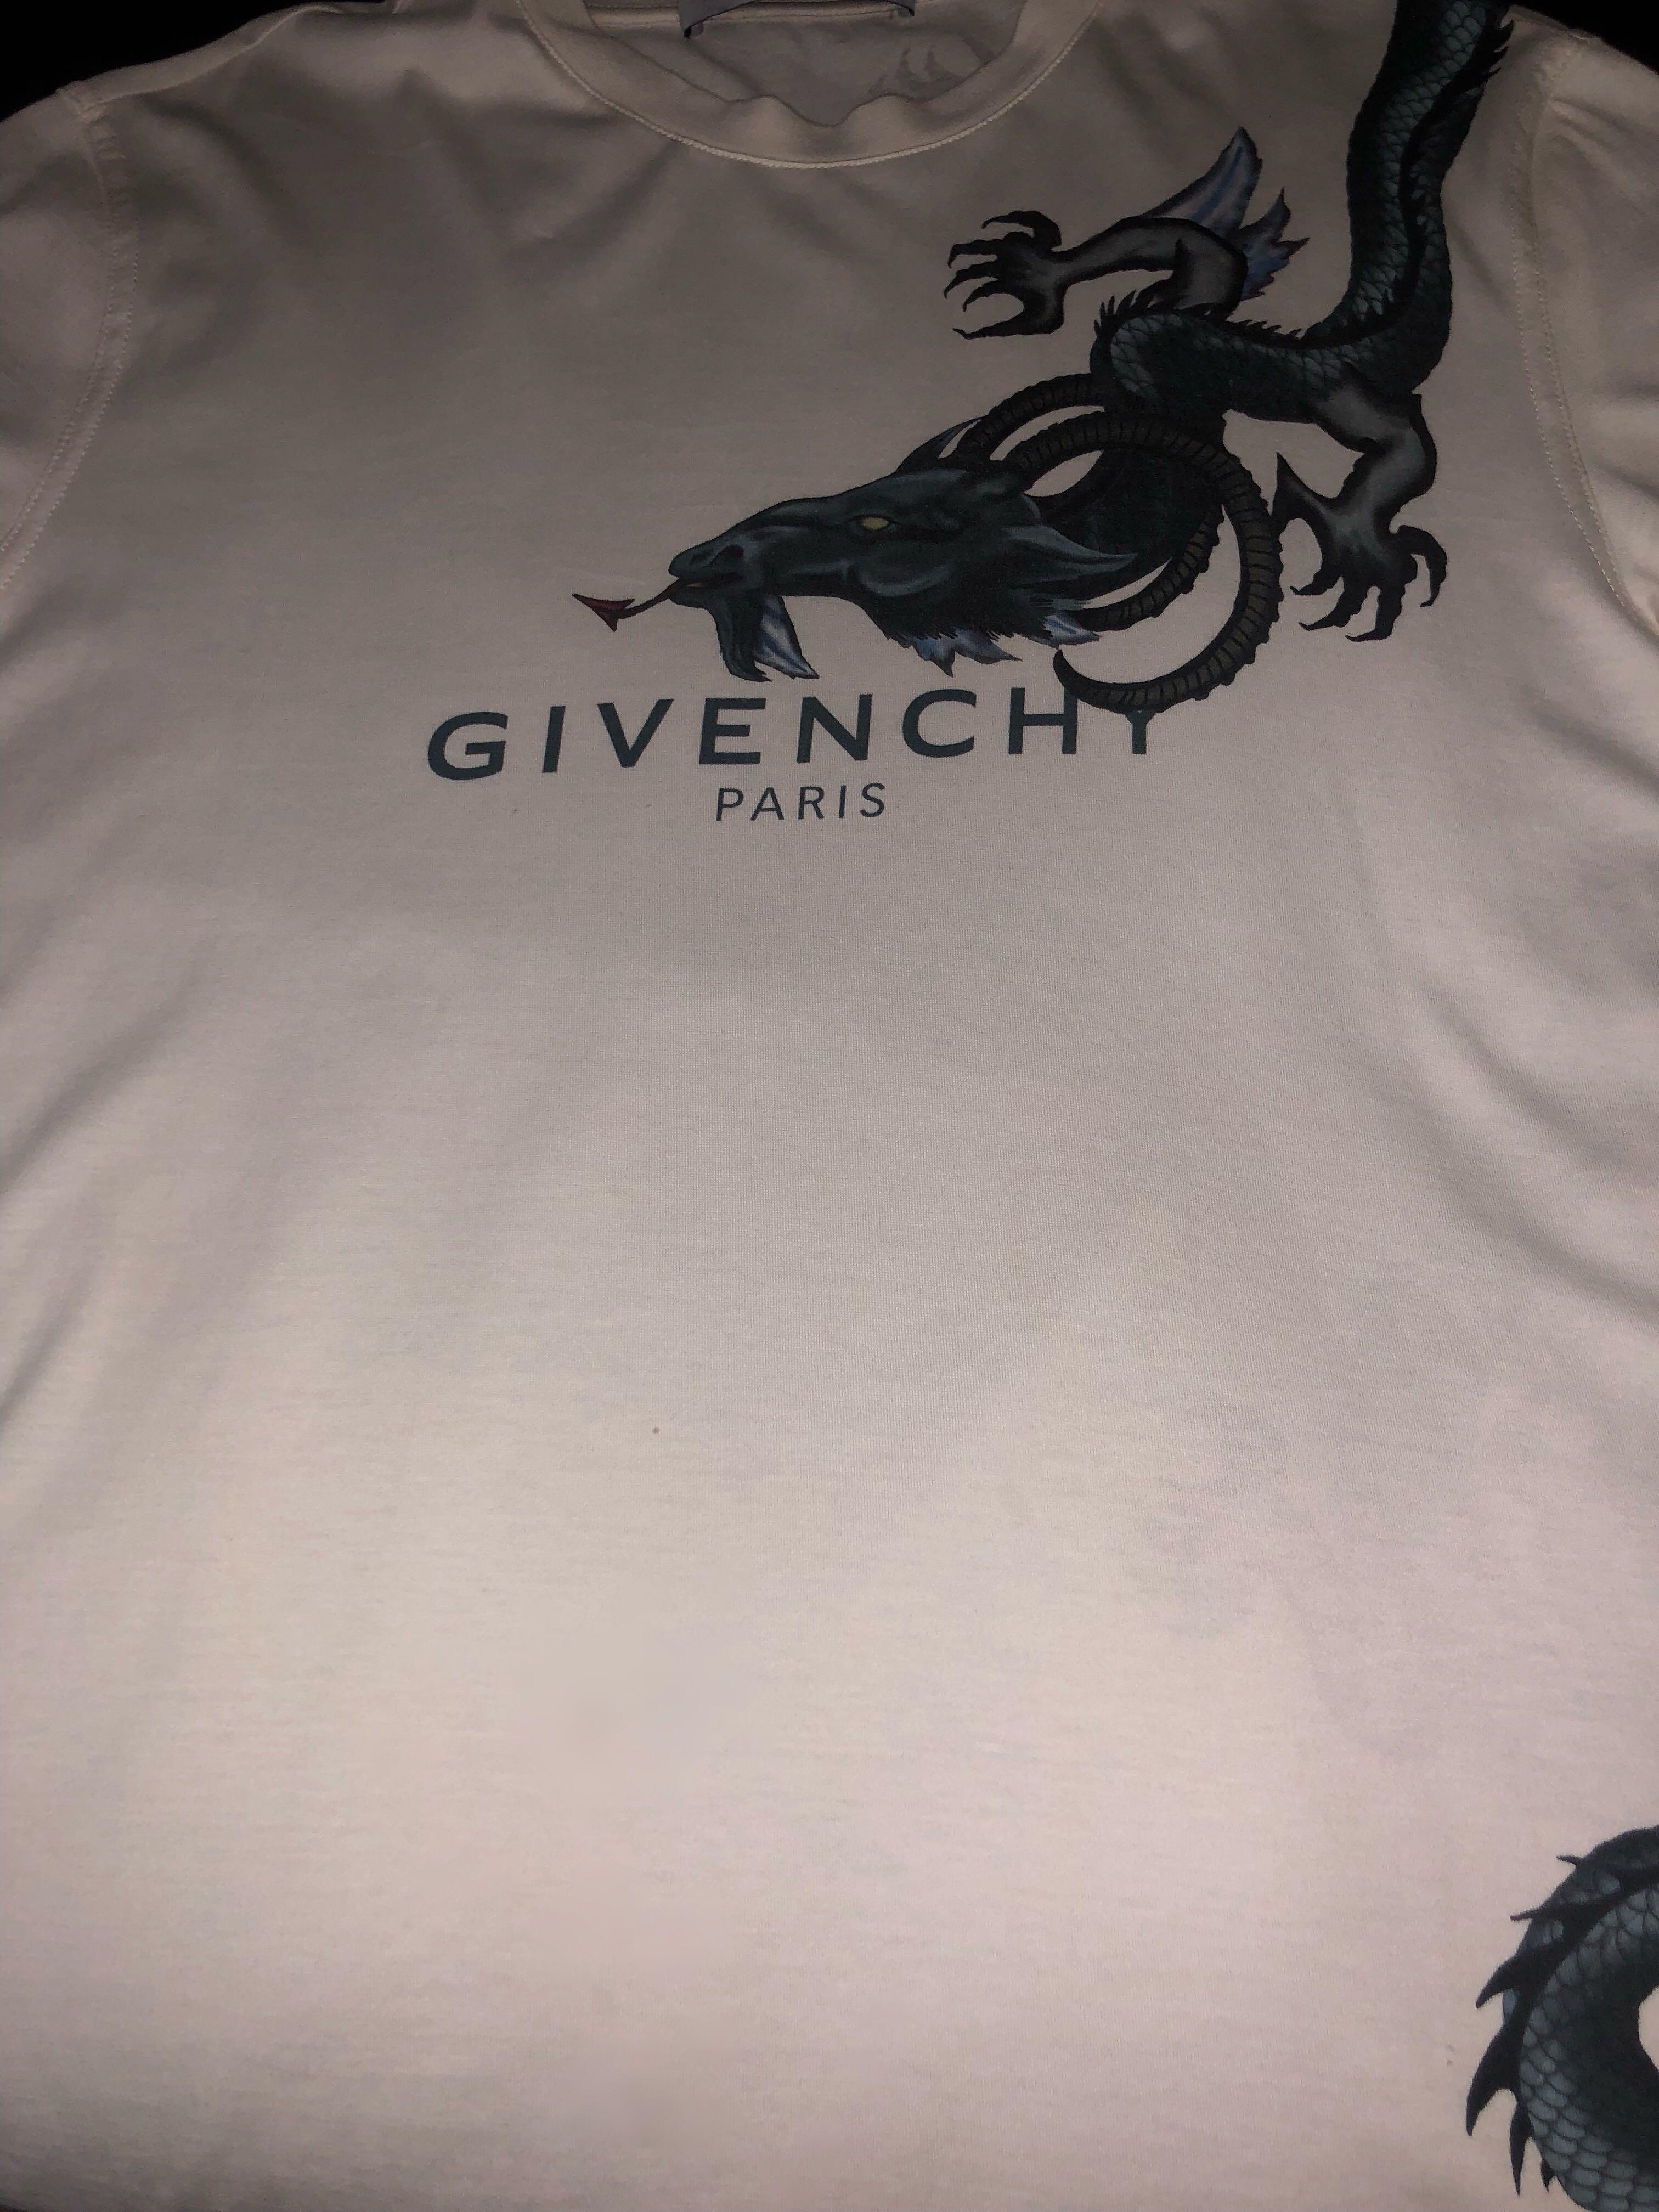 givenchy t shirt dragon